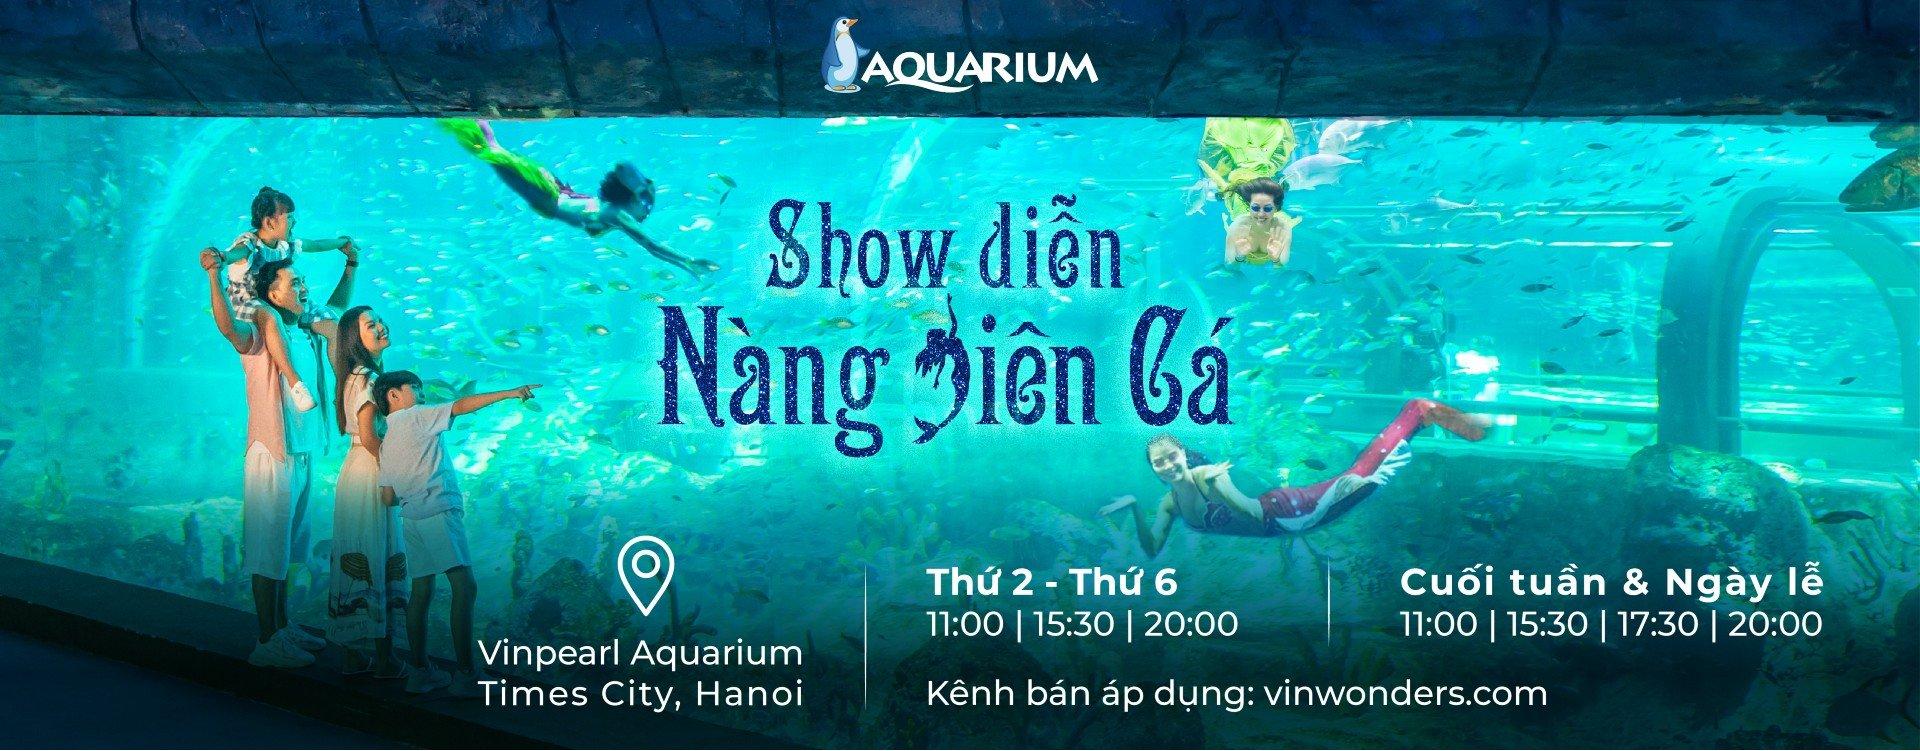 Review các khu vui chơi ở Hà Nội nổi tiếng nhất: giá vé, có gì hấp dẫn?